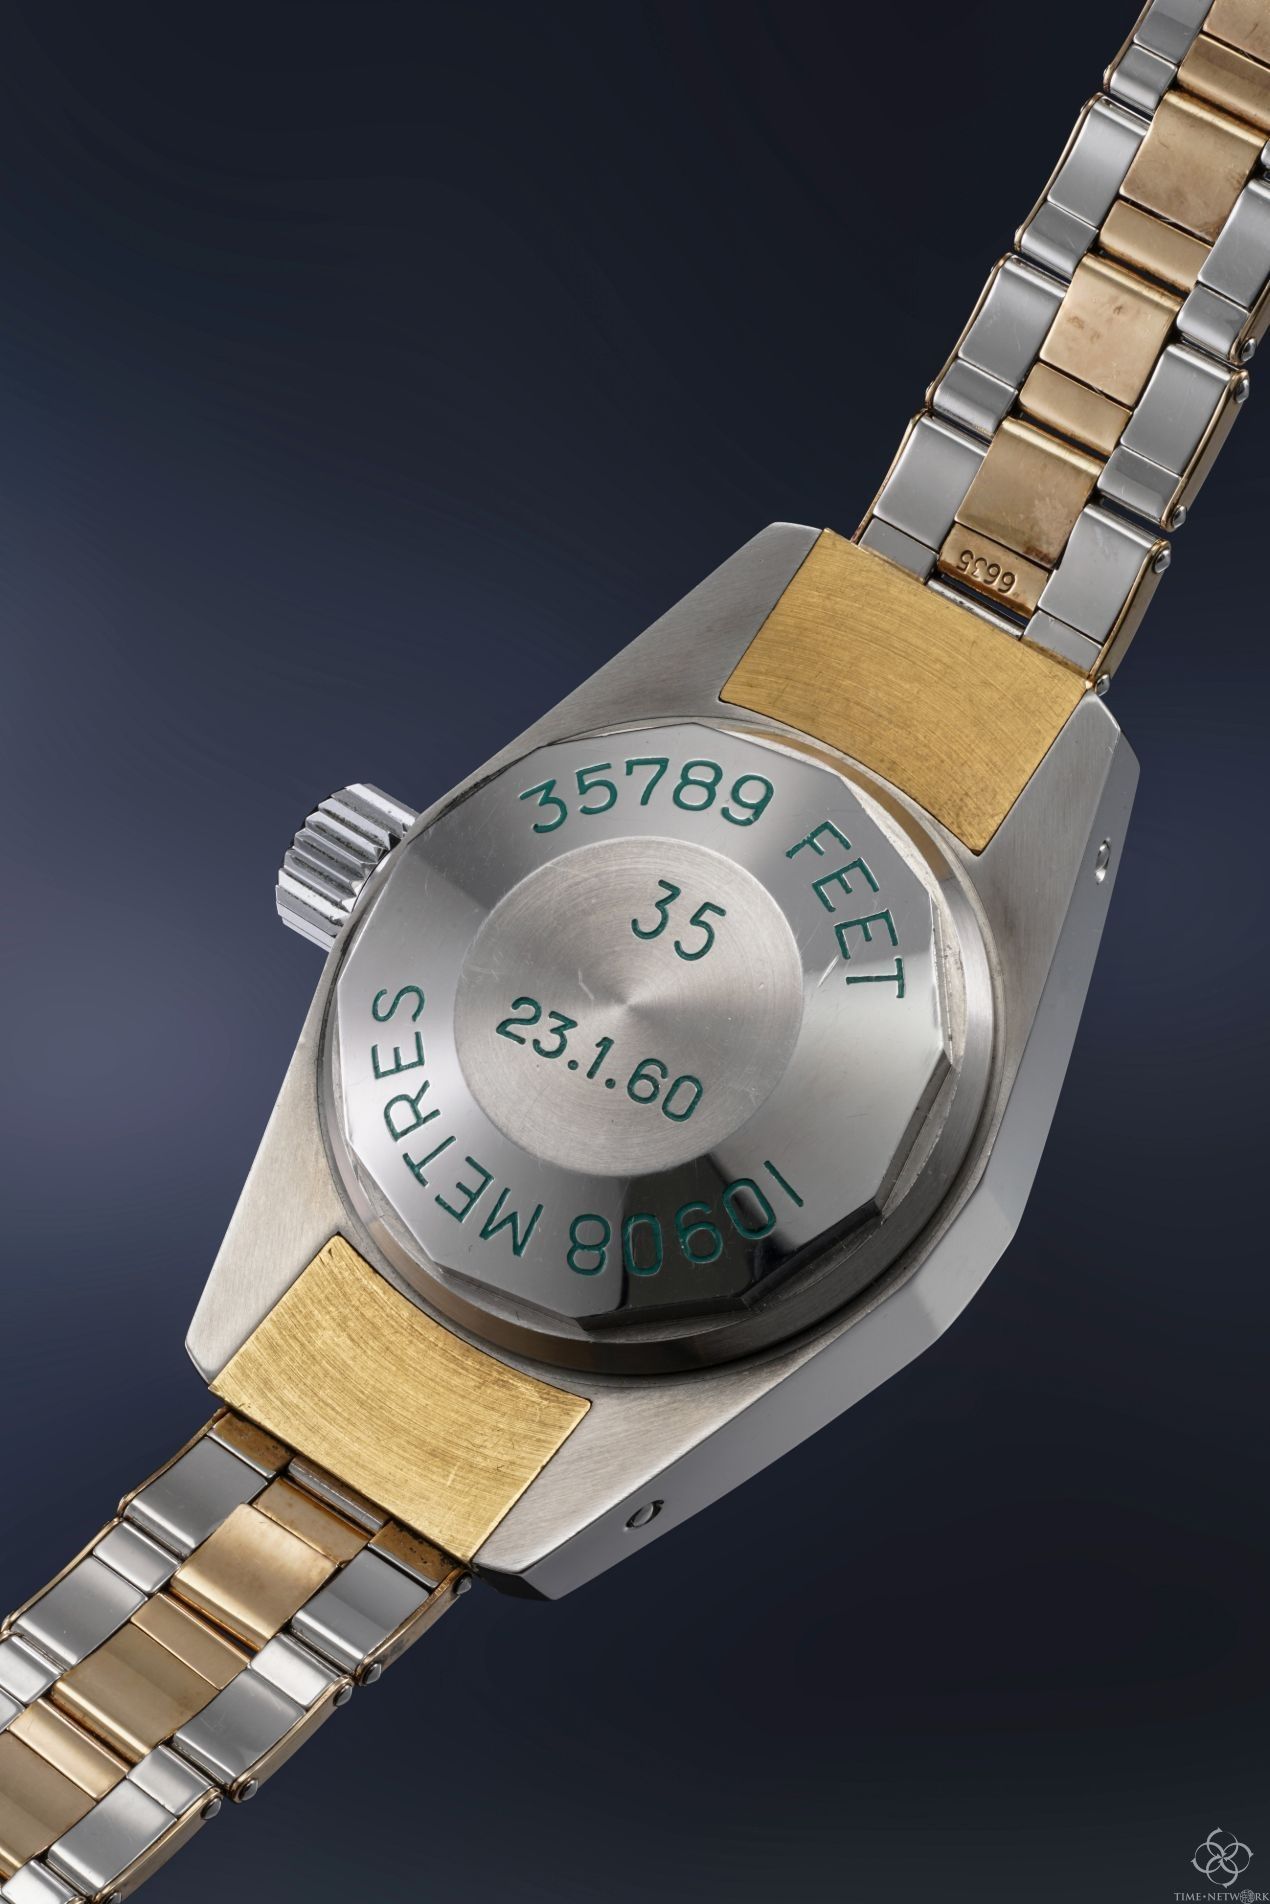 下潜到35789英尺深度的一只手表将被拍卖